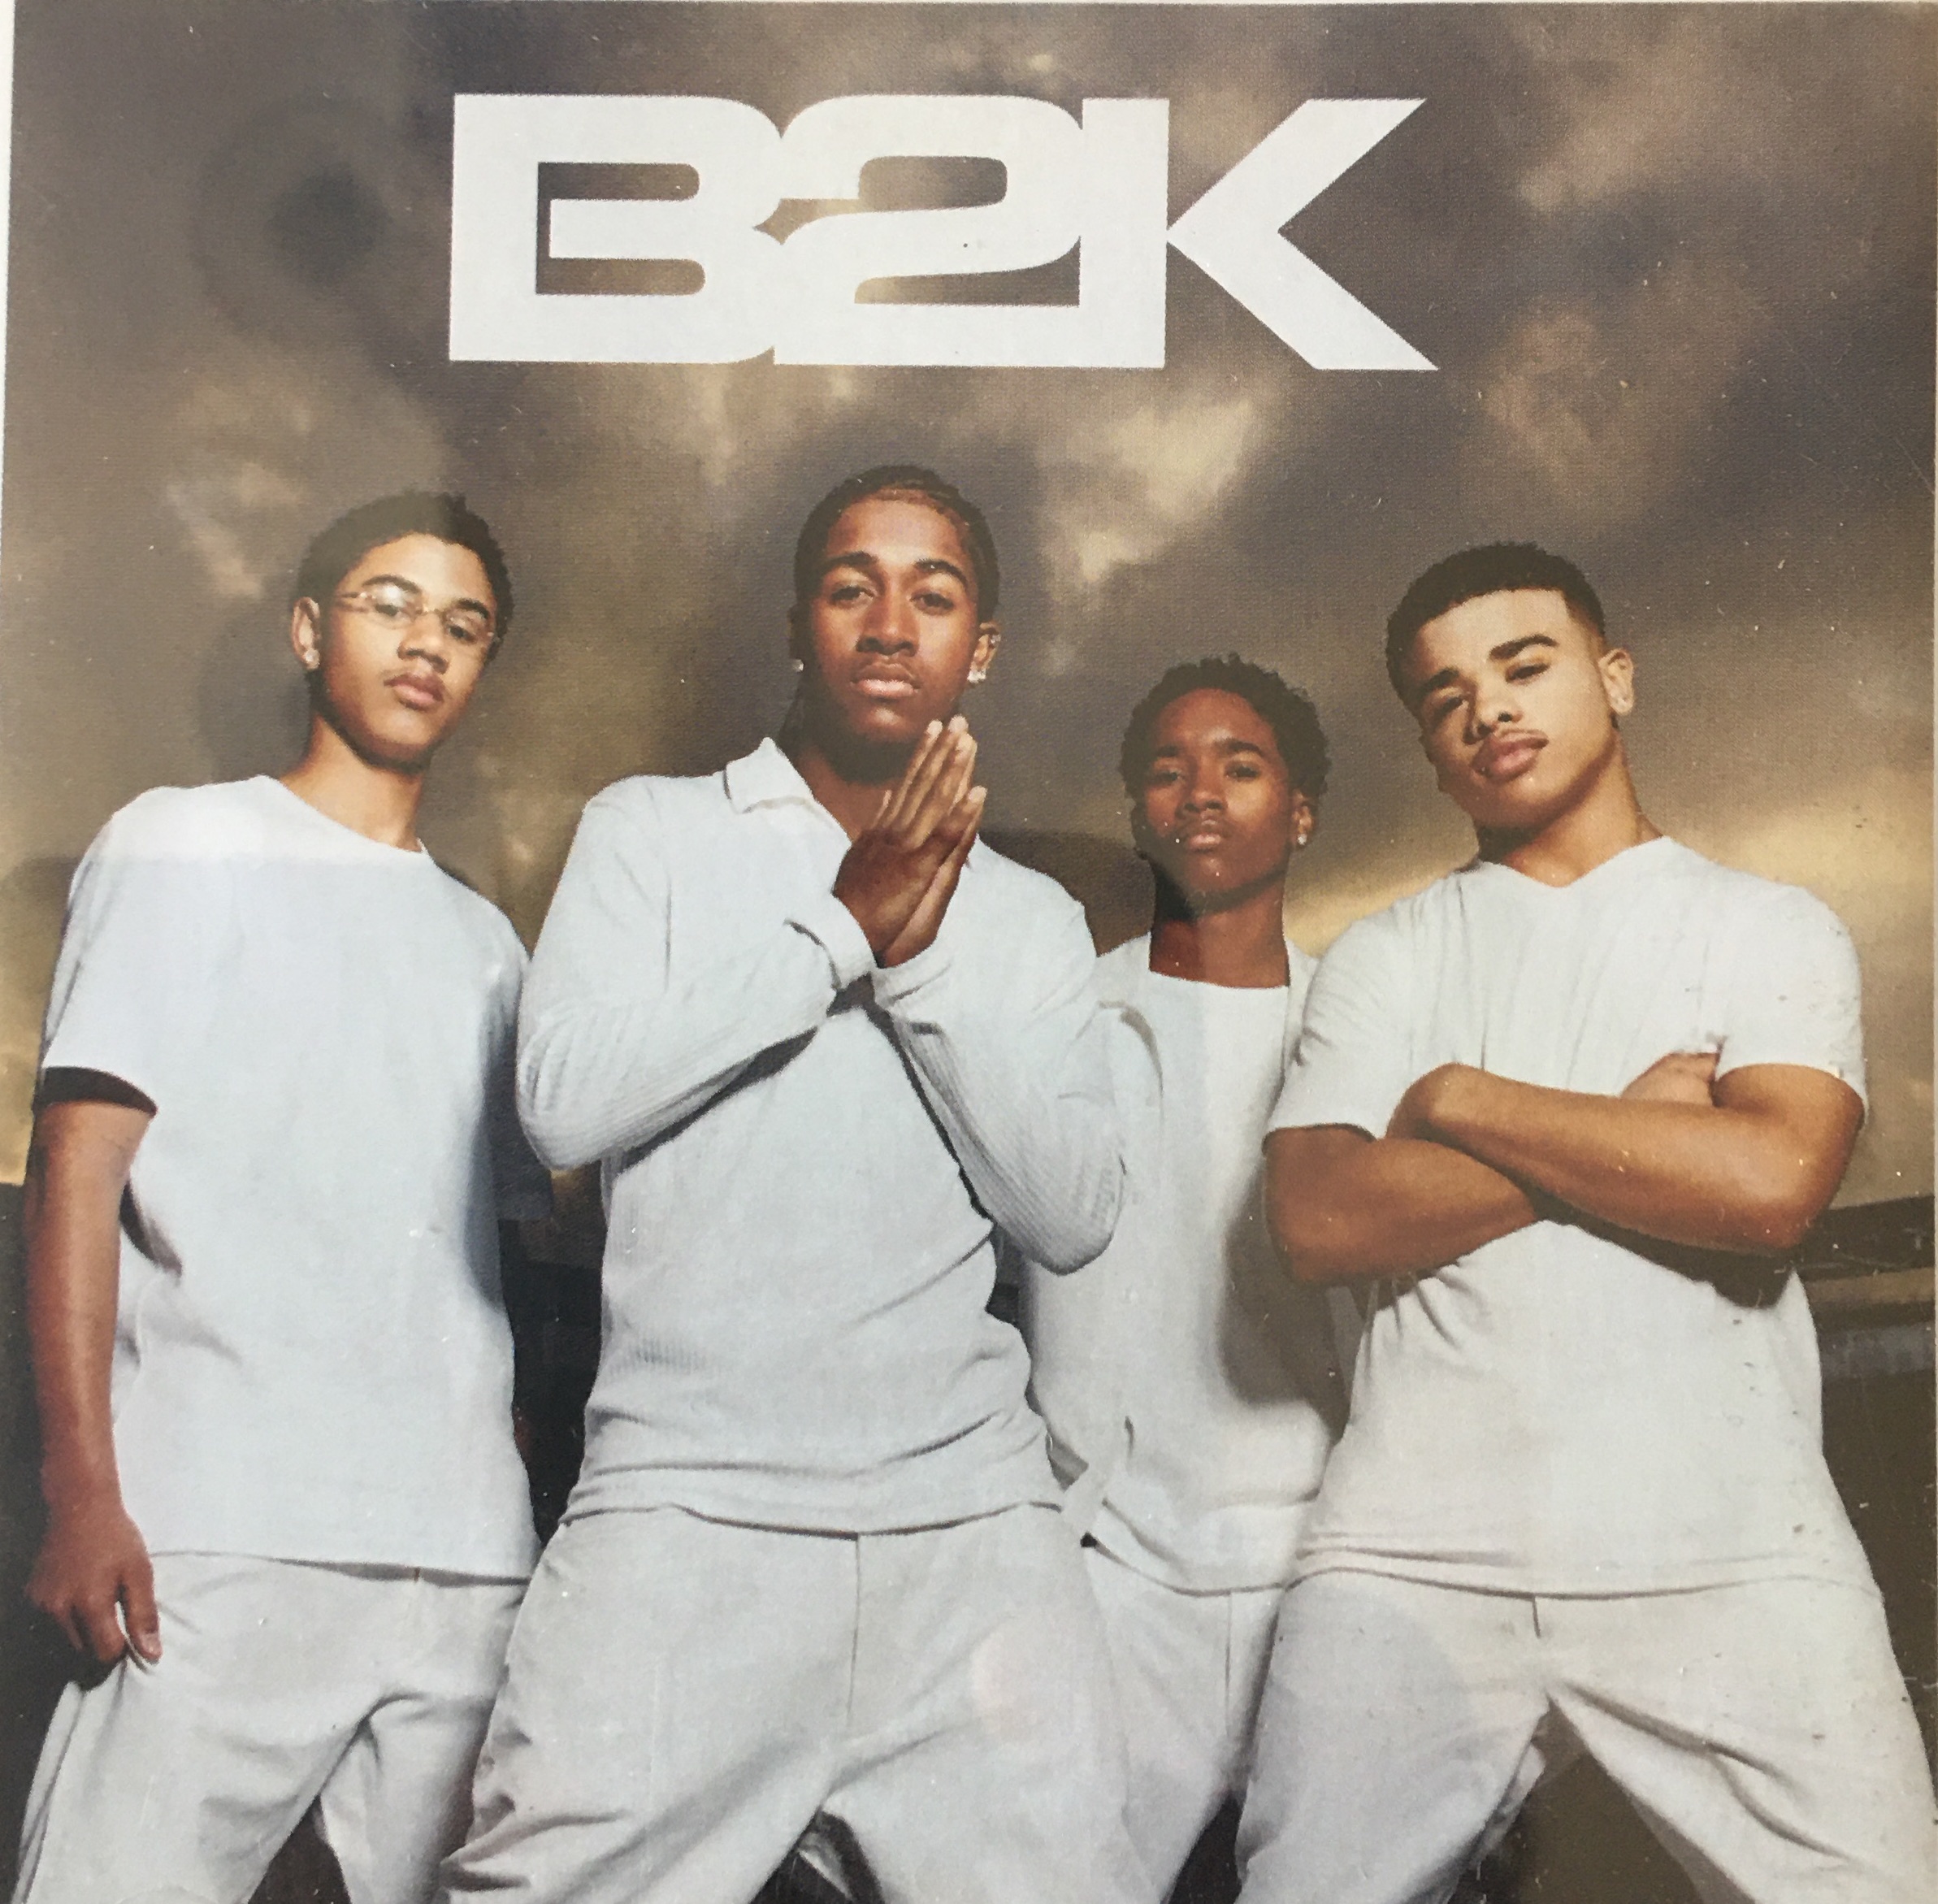 B2k album cover